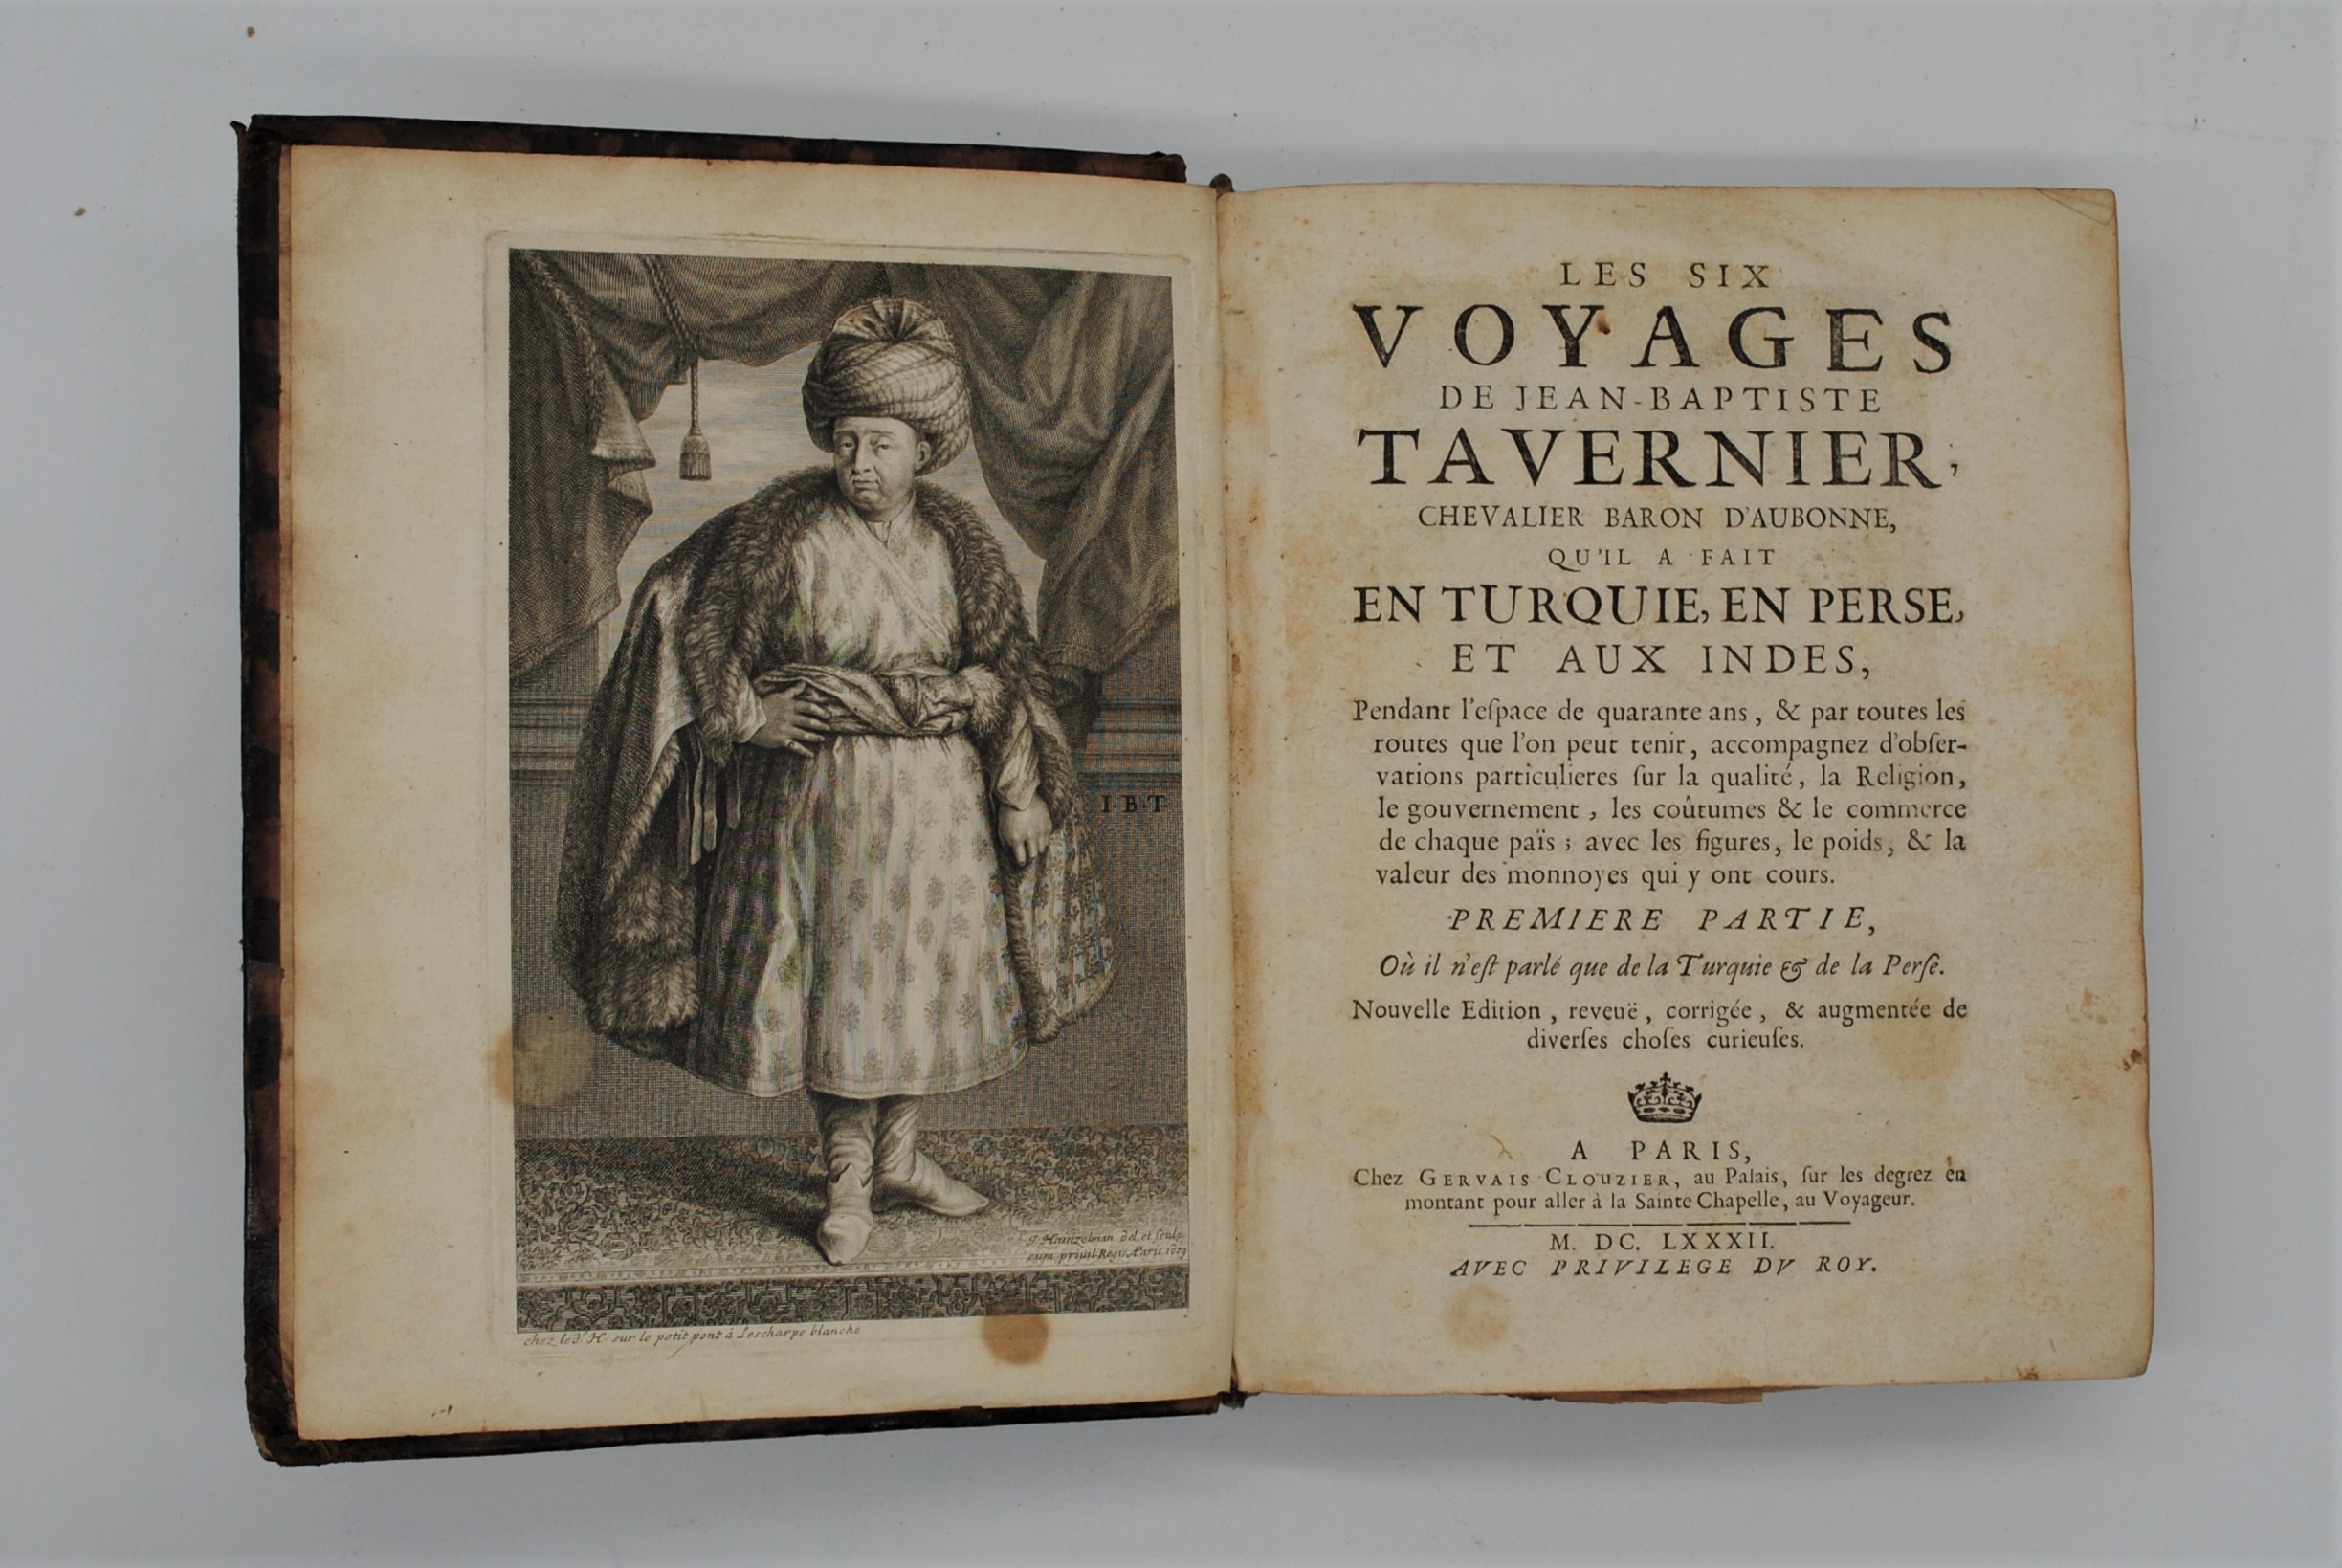 Jean-Baptiste Tavernier's travel